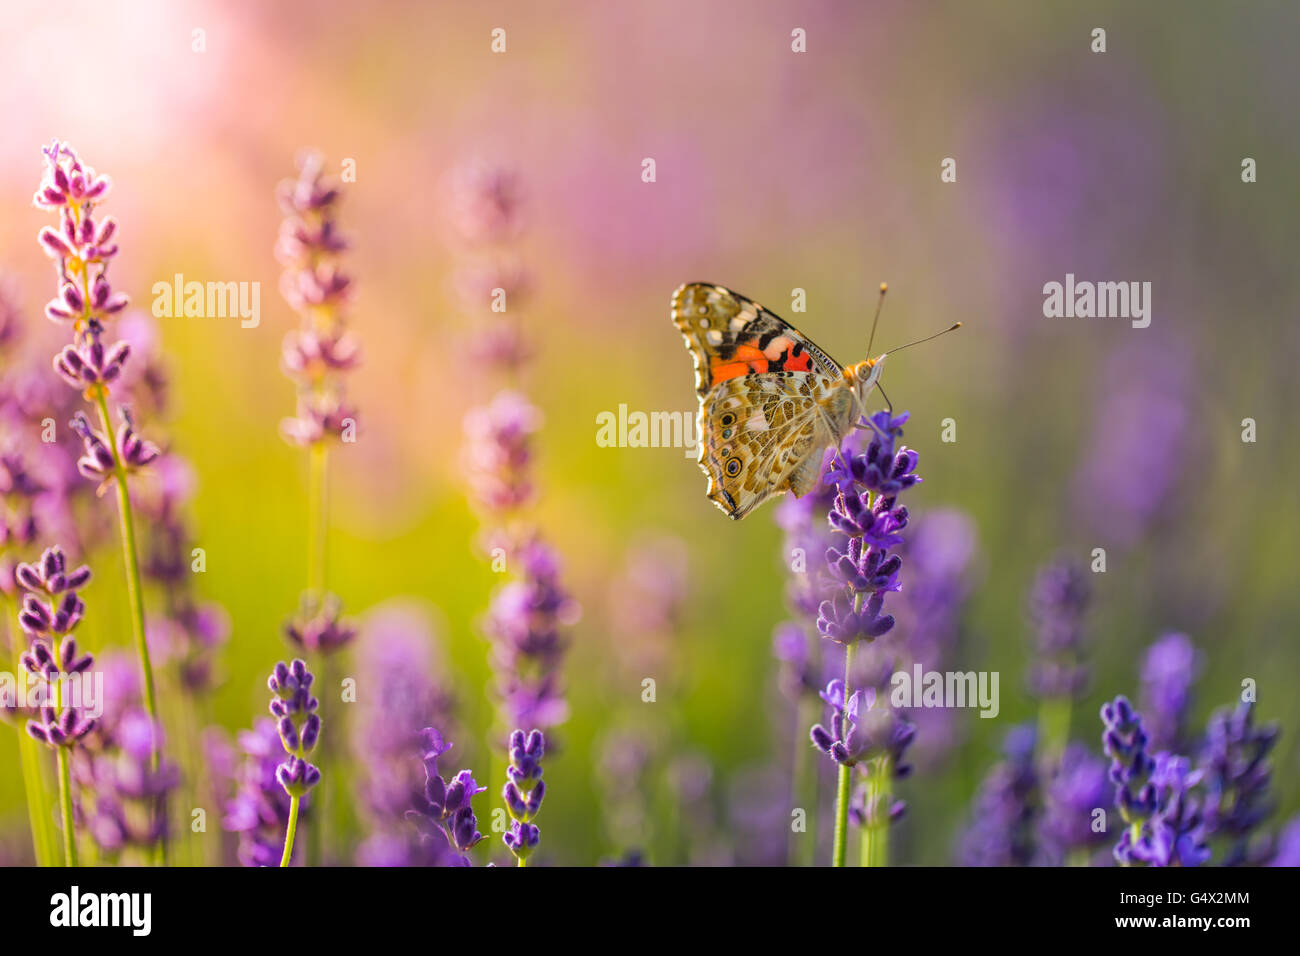 Schöne inspirierende Hintergrund Konzept. Schmetterling und Lavendel-Konzept. Sonnenlicht und tolle Farben! Instagram-Effekt Stockfoto